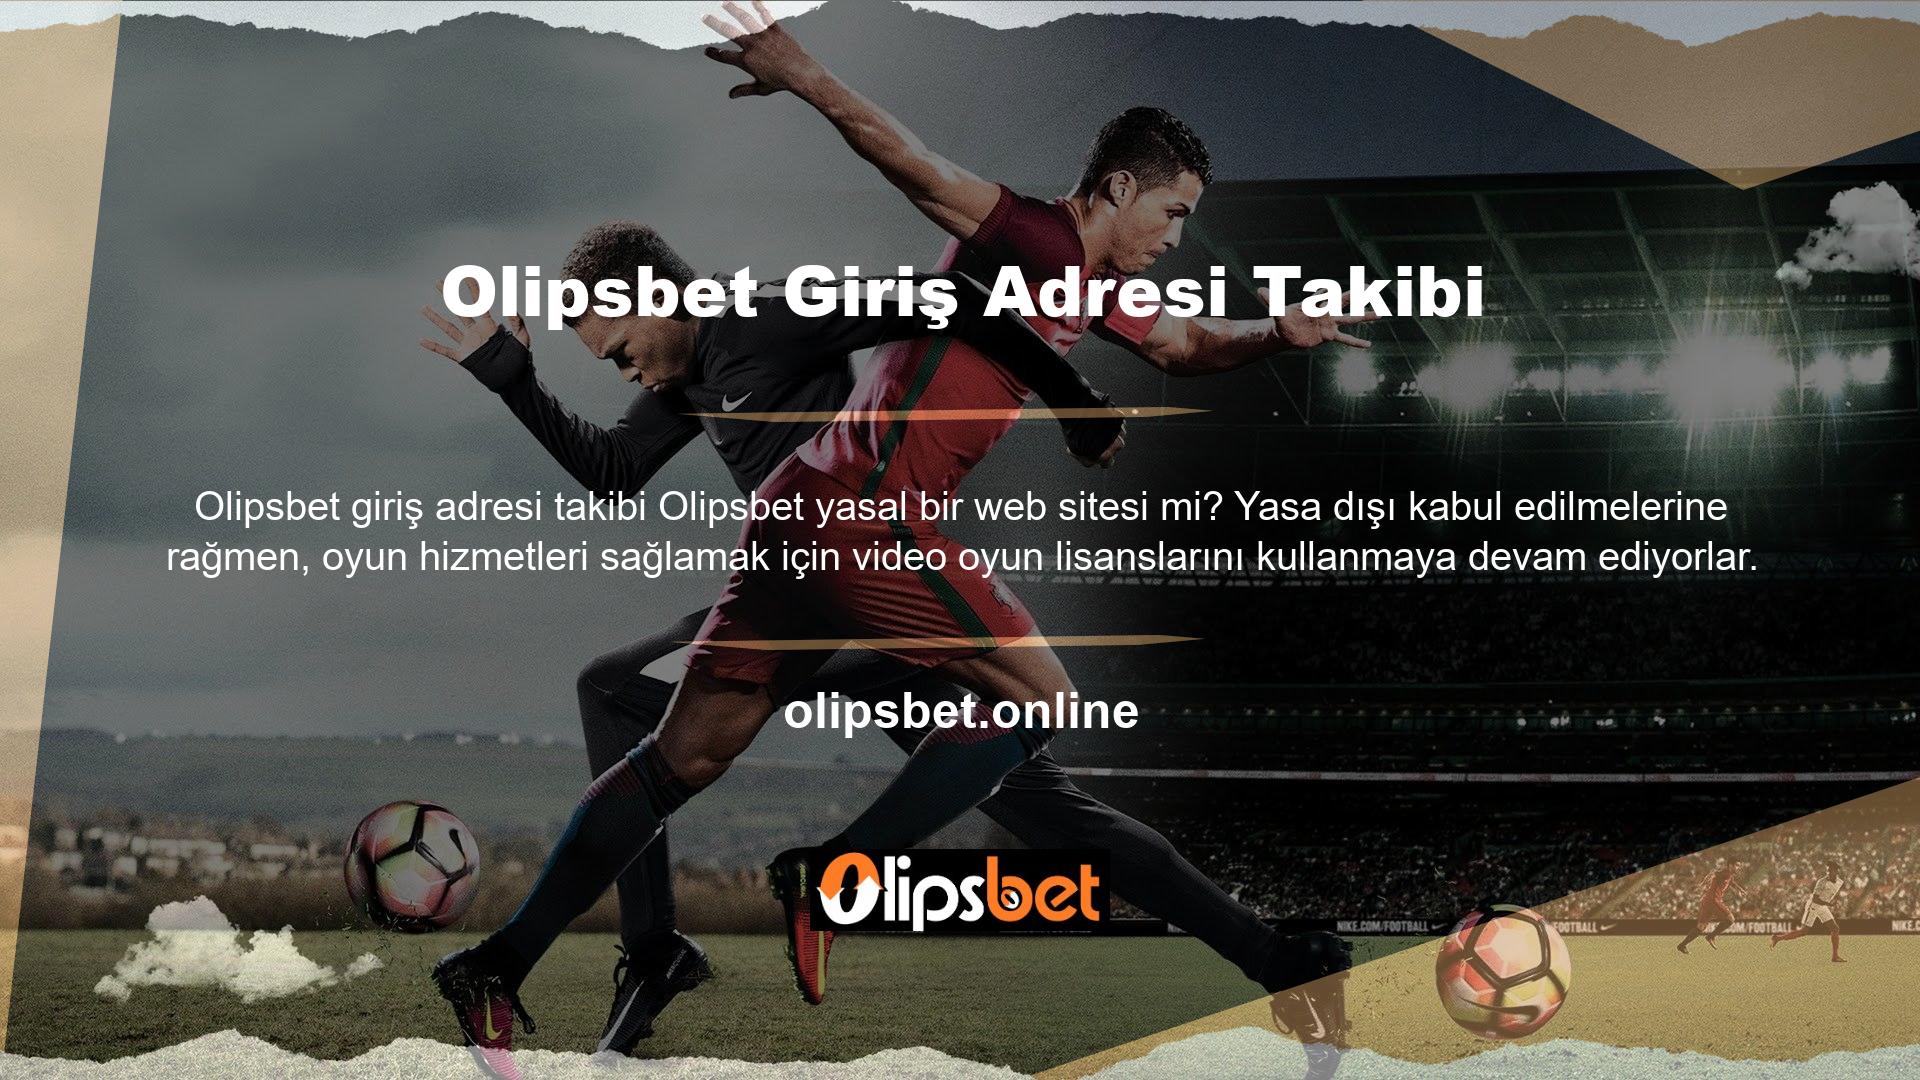 Türkiye listesi resmi adresleri içerir ve Olipsbet giriş adresi takibine erişim sağlar